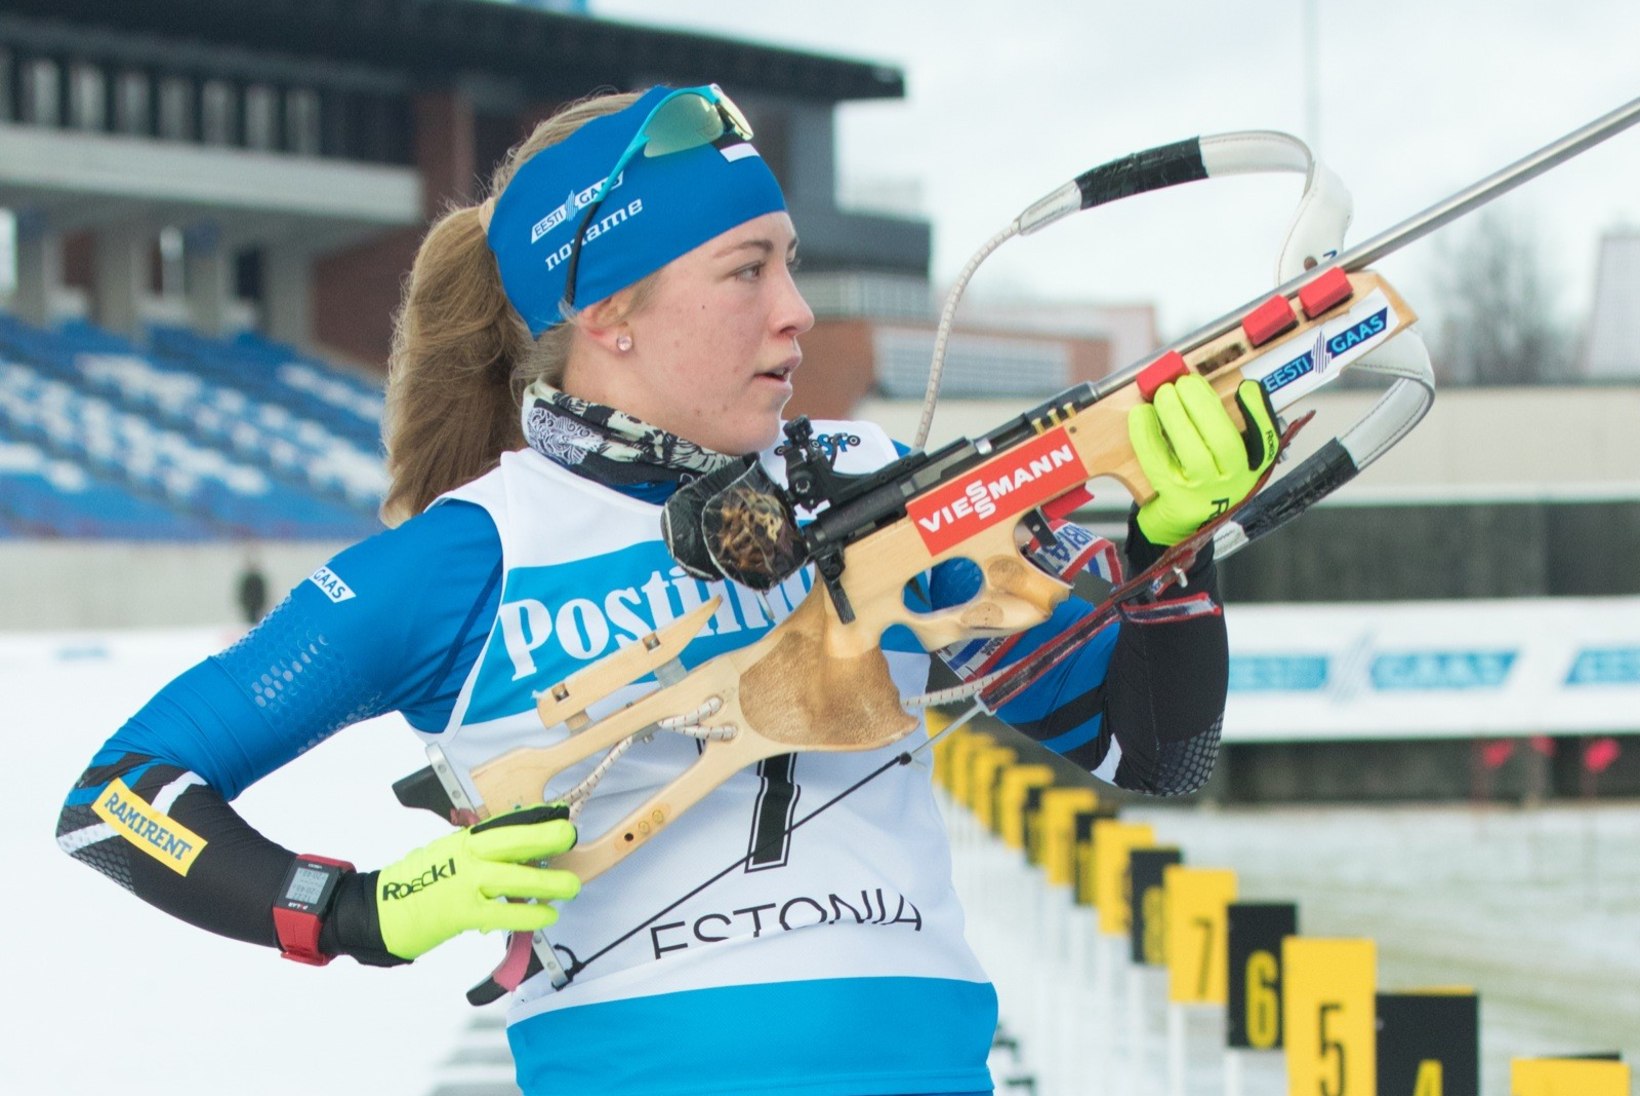 HEA TÖÖ! Johanna Talihärm alustas olümpiat suurepärase tulemusega, jättes seljataha MK-sarja liidri